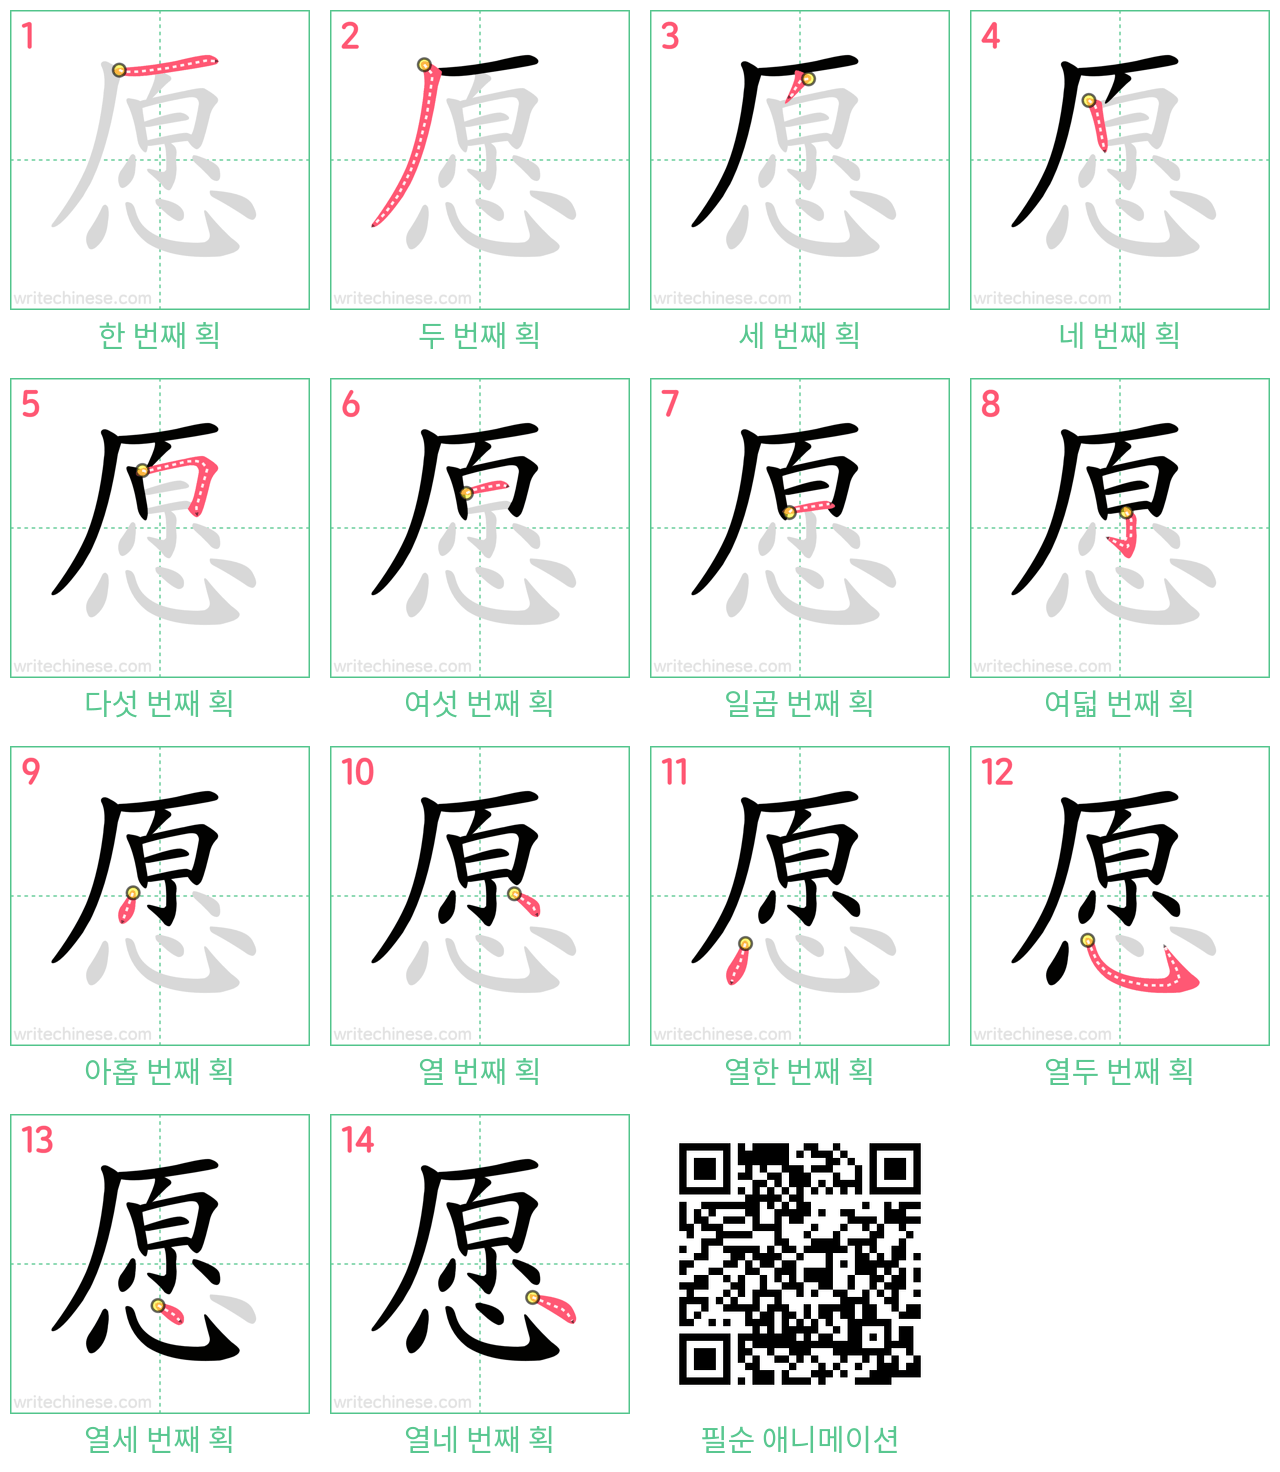 愿 step-by-step stroke order diagrams